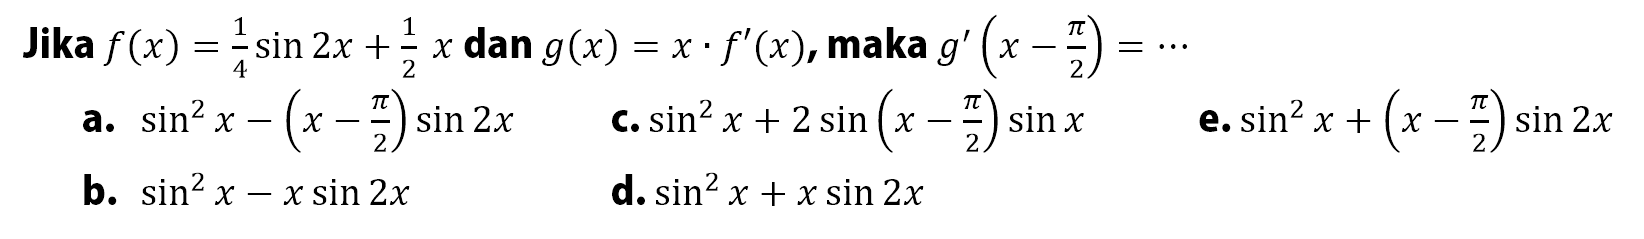 Jika f(x) = 1/4 sin 2x + 1/2 x dan g(x) = x.f'(x), maka g'(x-pi/2) = ...